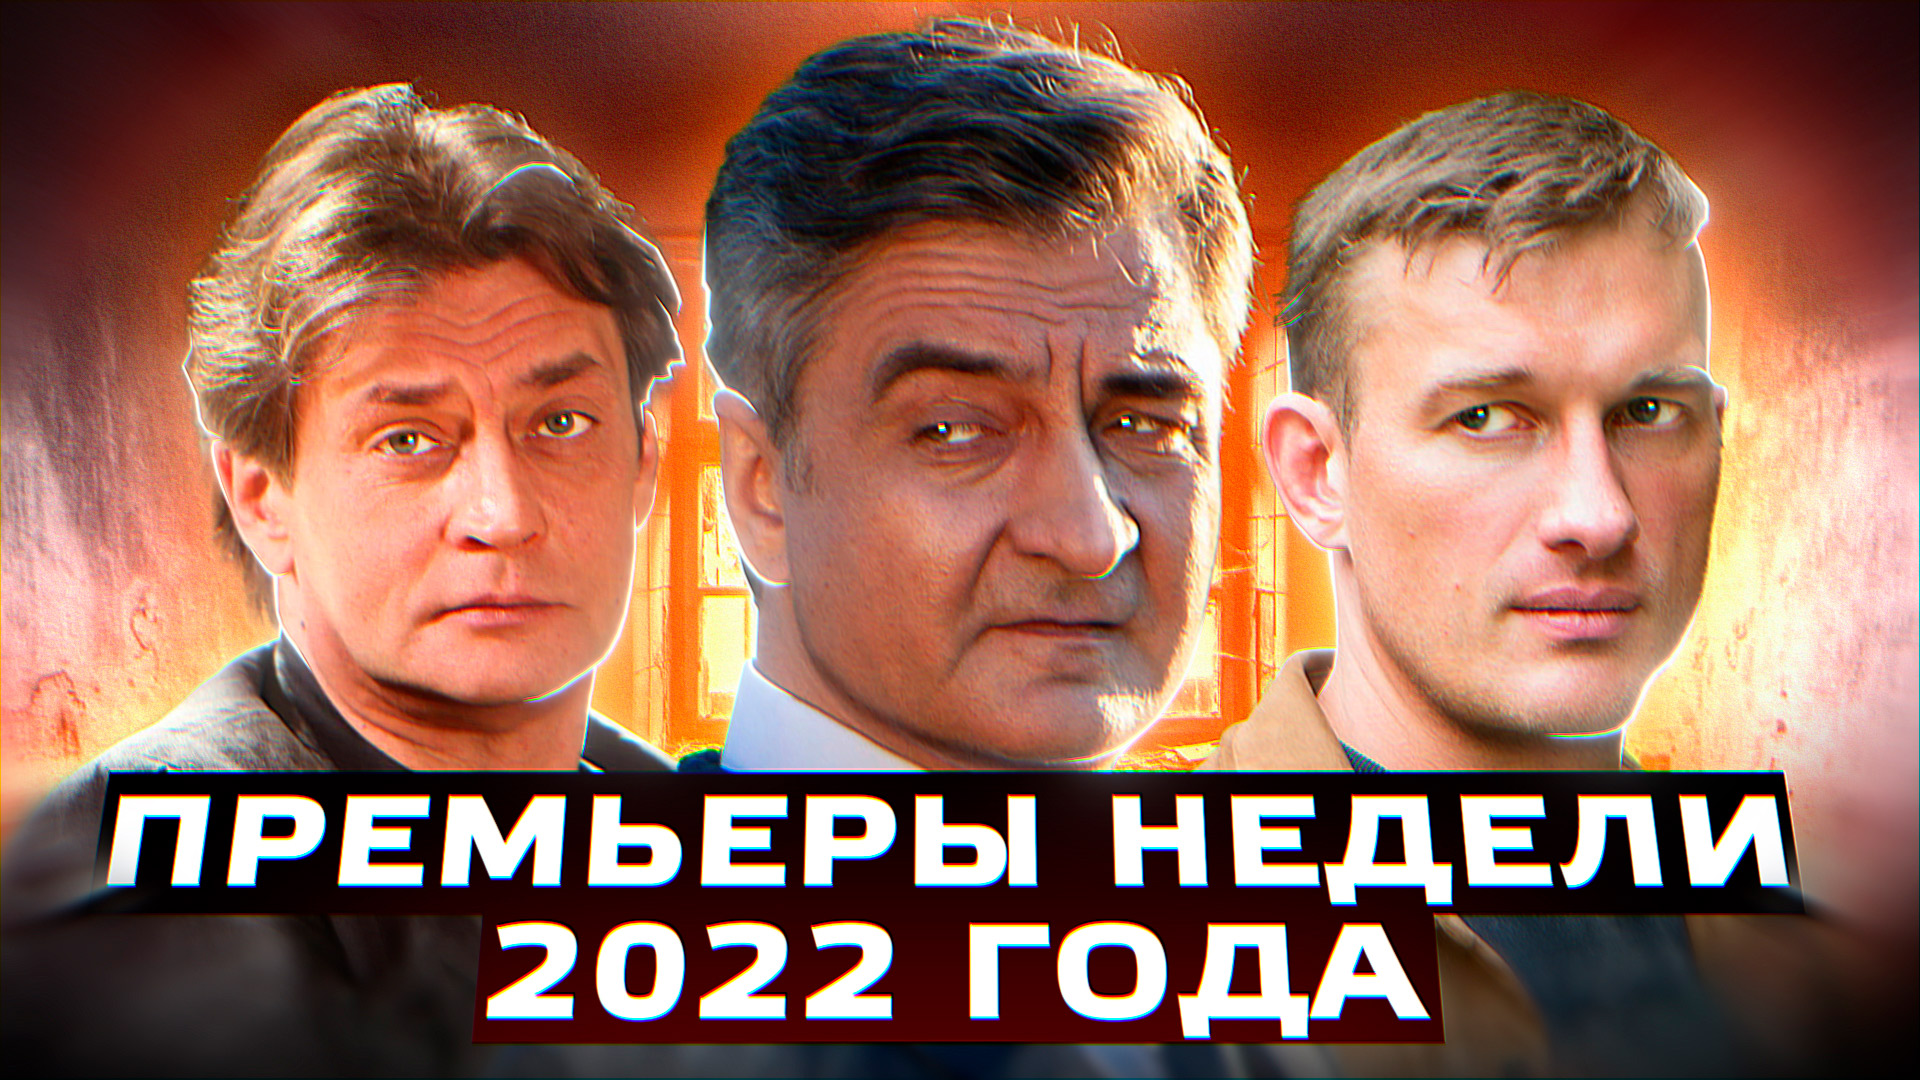 ПРЕМЬЕРЫ НЕДЕЛИ 2022 ГОДА | 12 Новых русских сериалов июль 2022 года